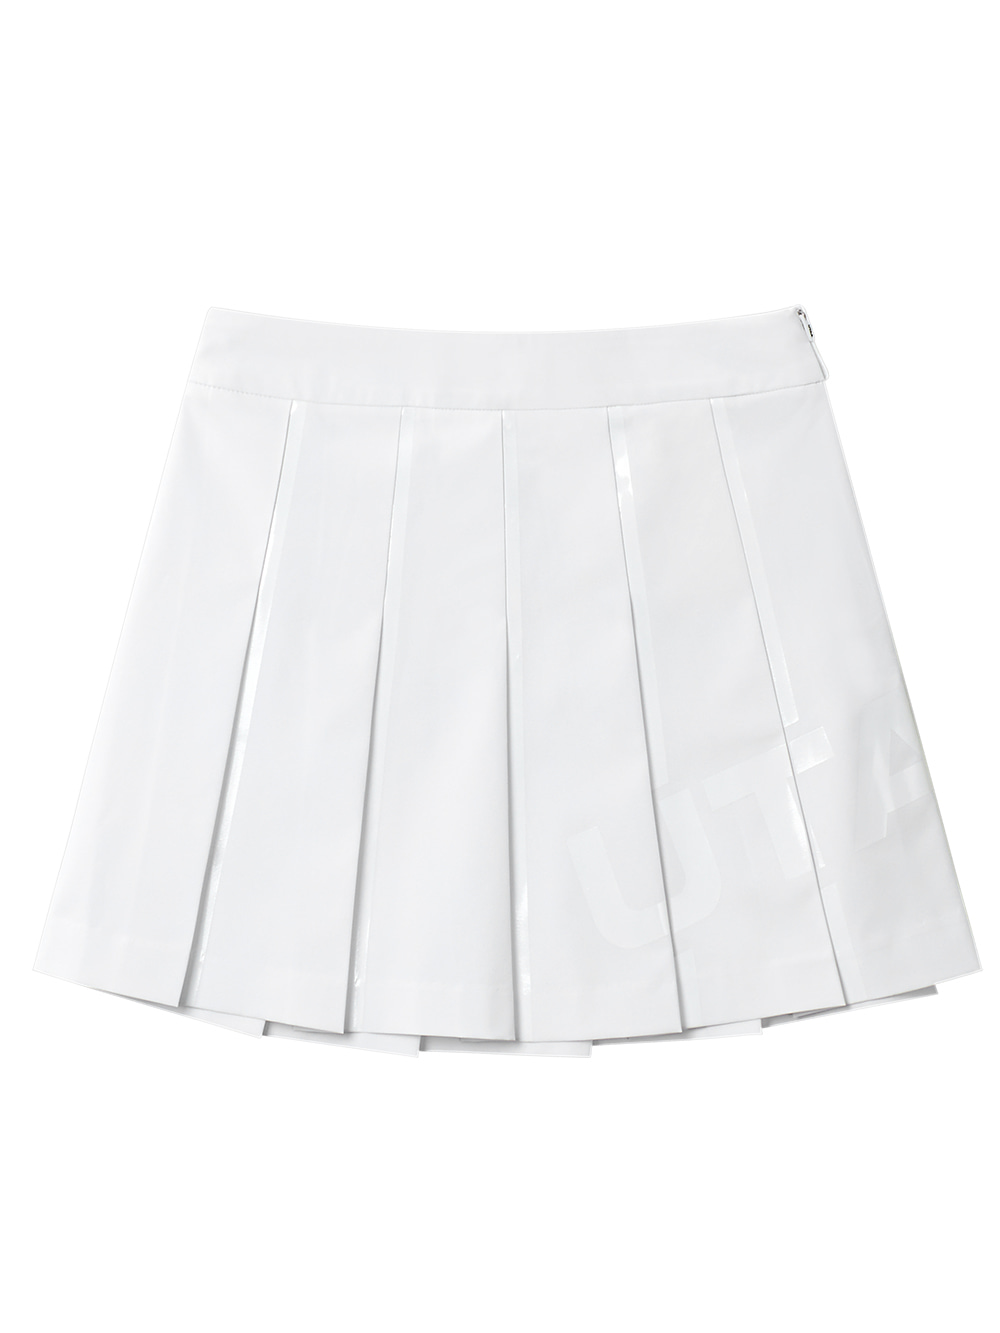 UTAA Welding Bounce Logo Flare Fan Skirt : White (UB3SKF120WH)